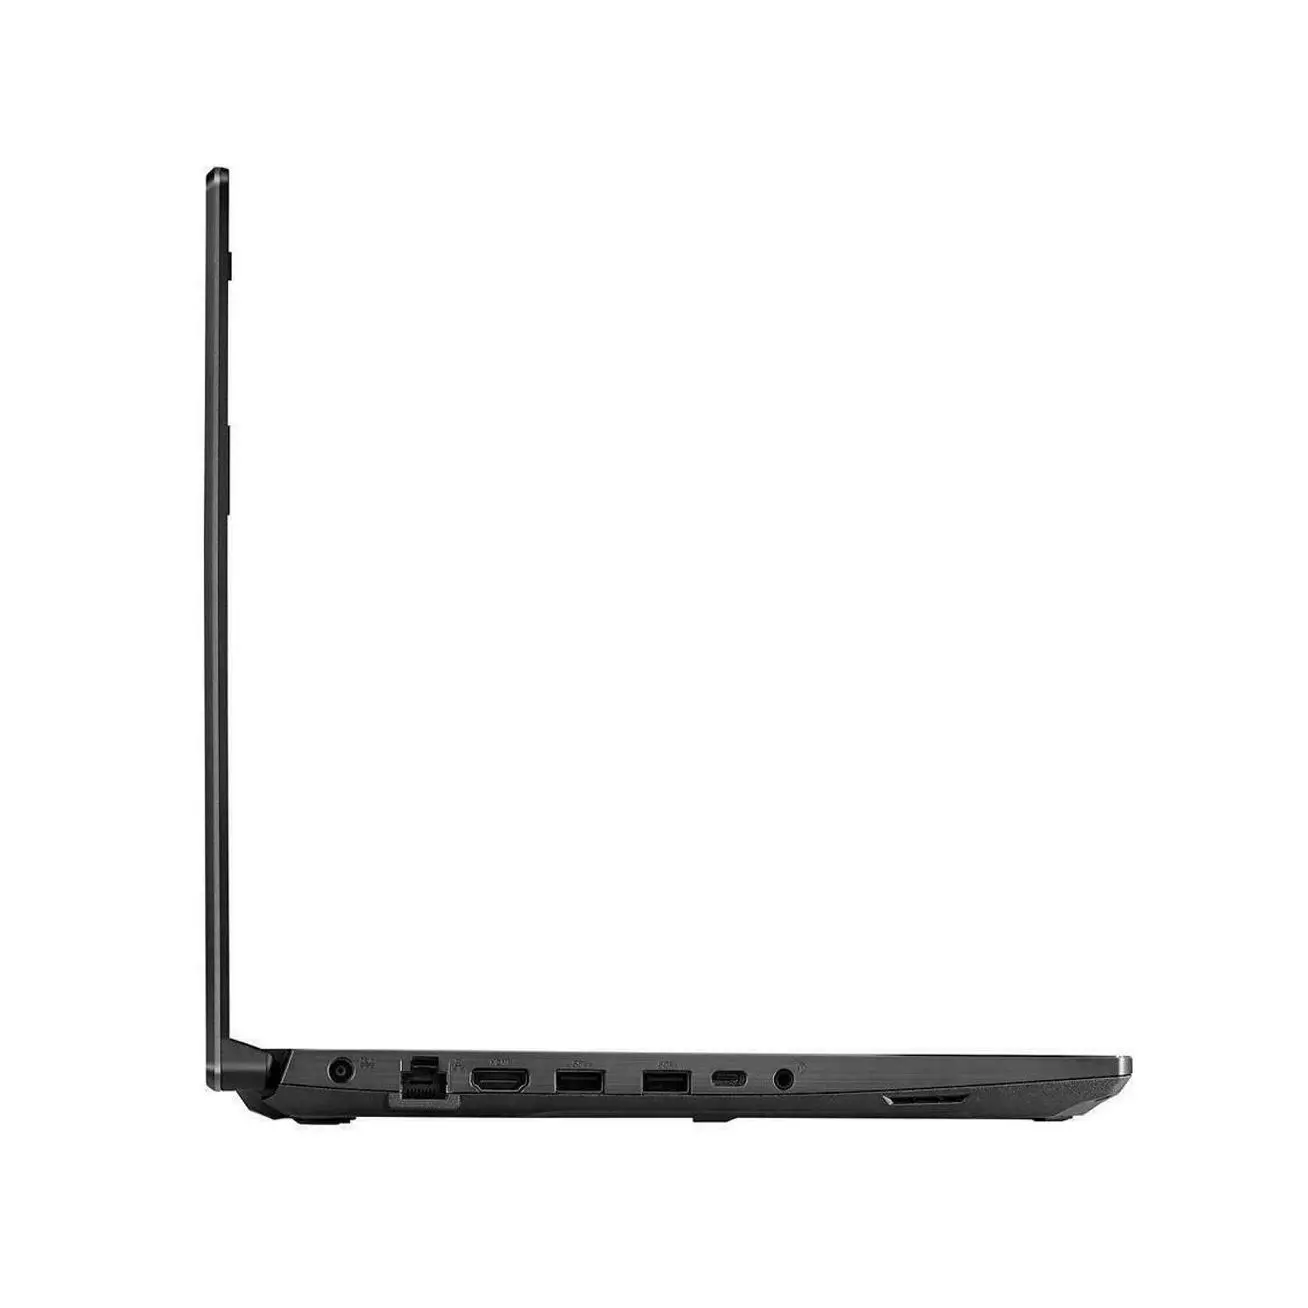 Asus TUF Gaming A15 Gaming Laptop, Ryzen 7-4800H, 15.6 Inch 144HZ, 16GB Or 32GB, 512GB or 1TB Nvme, RTX3050, Windows 10 Gaming 7